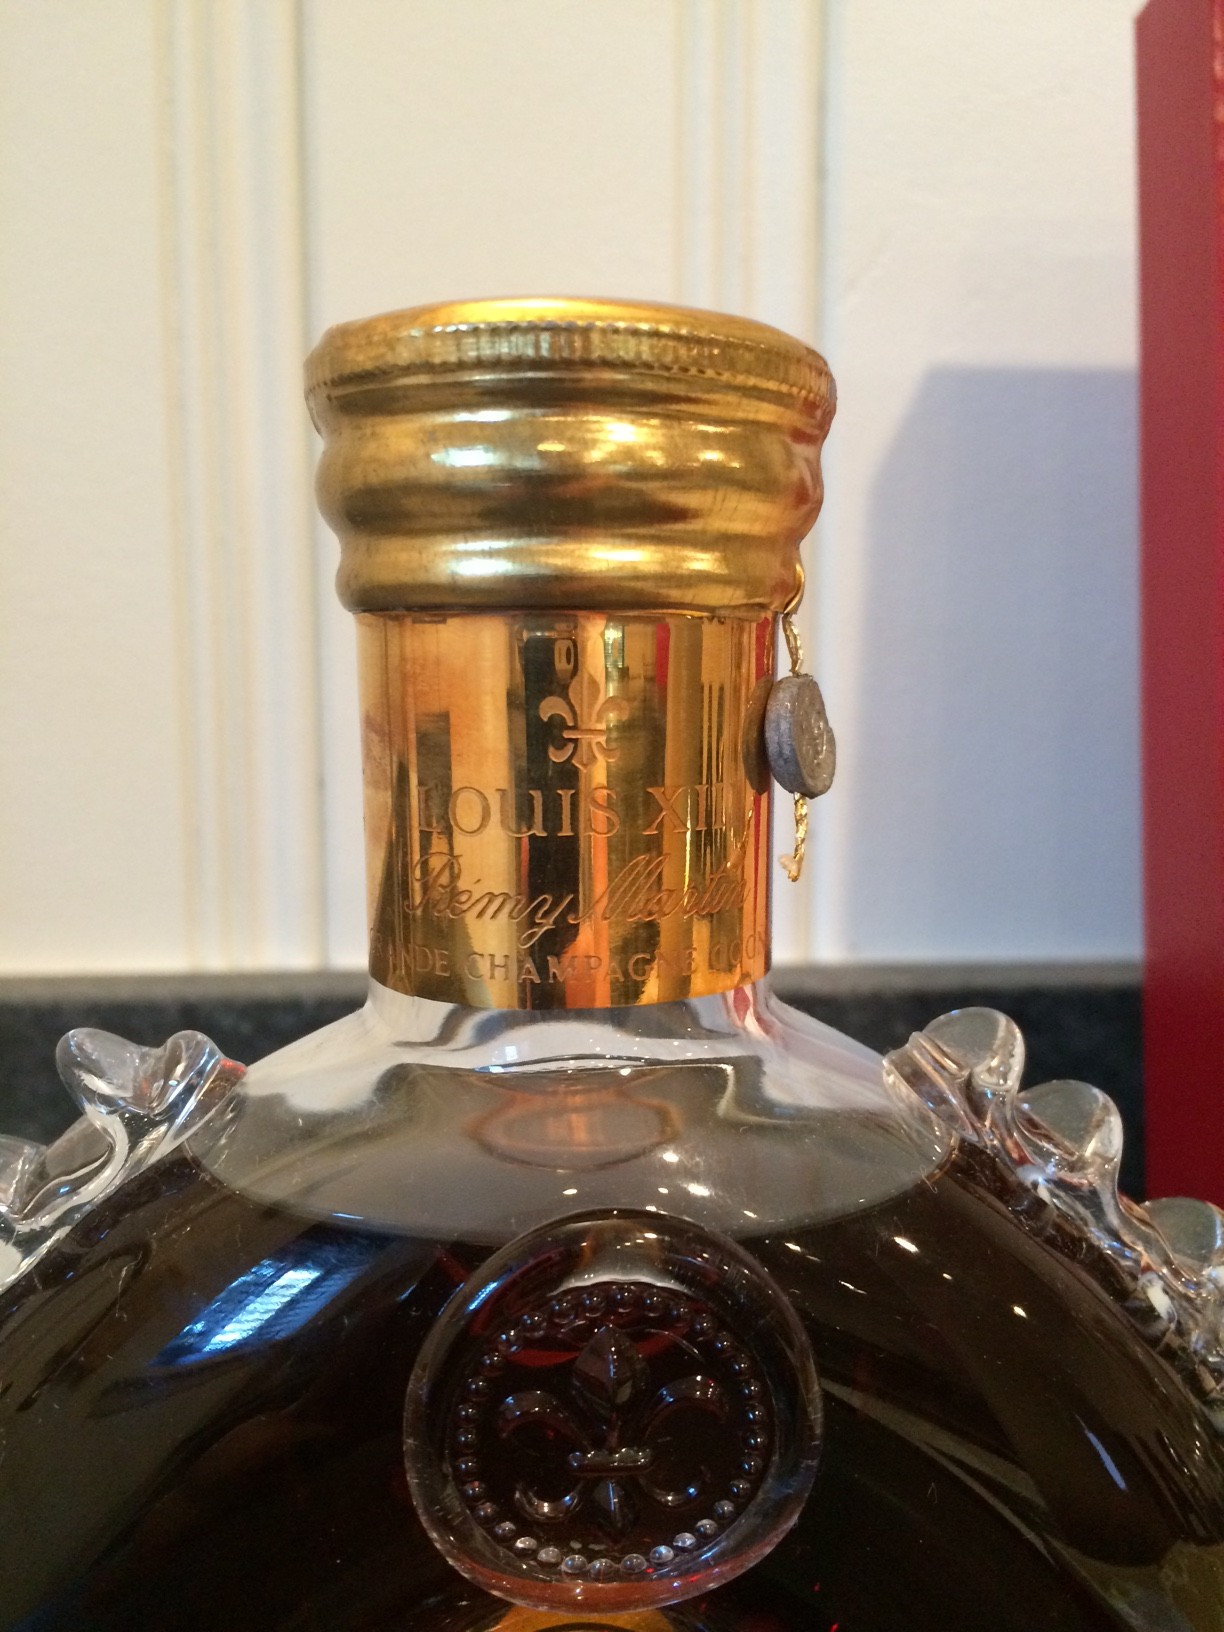 Louis XIII de Remy Martin Grande Champagne Cognac | Cognac Expert: The ...